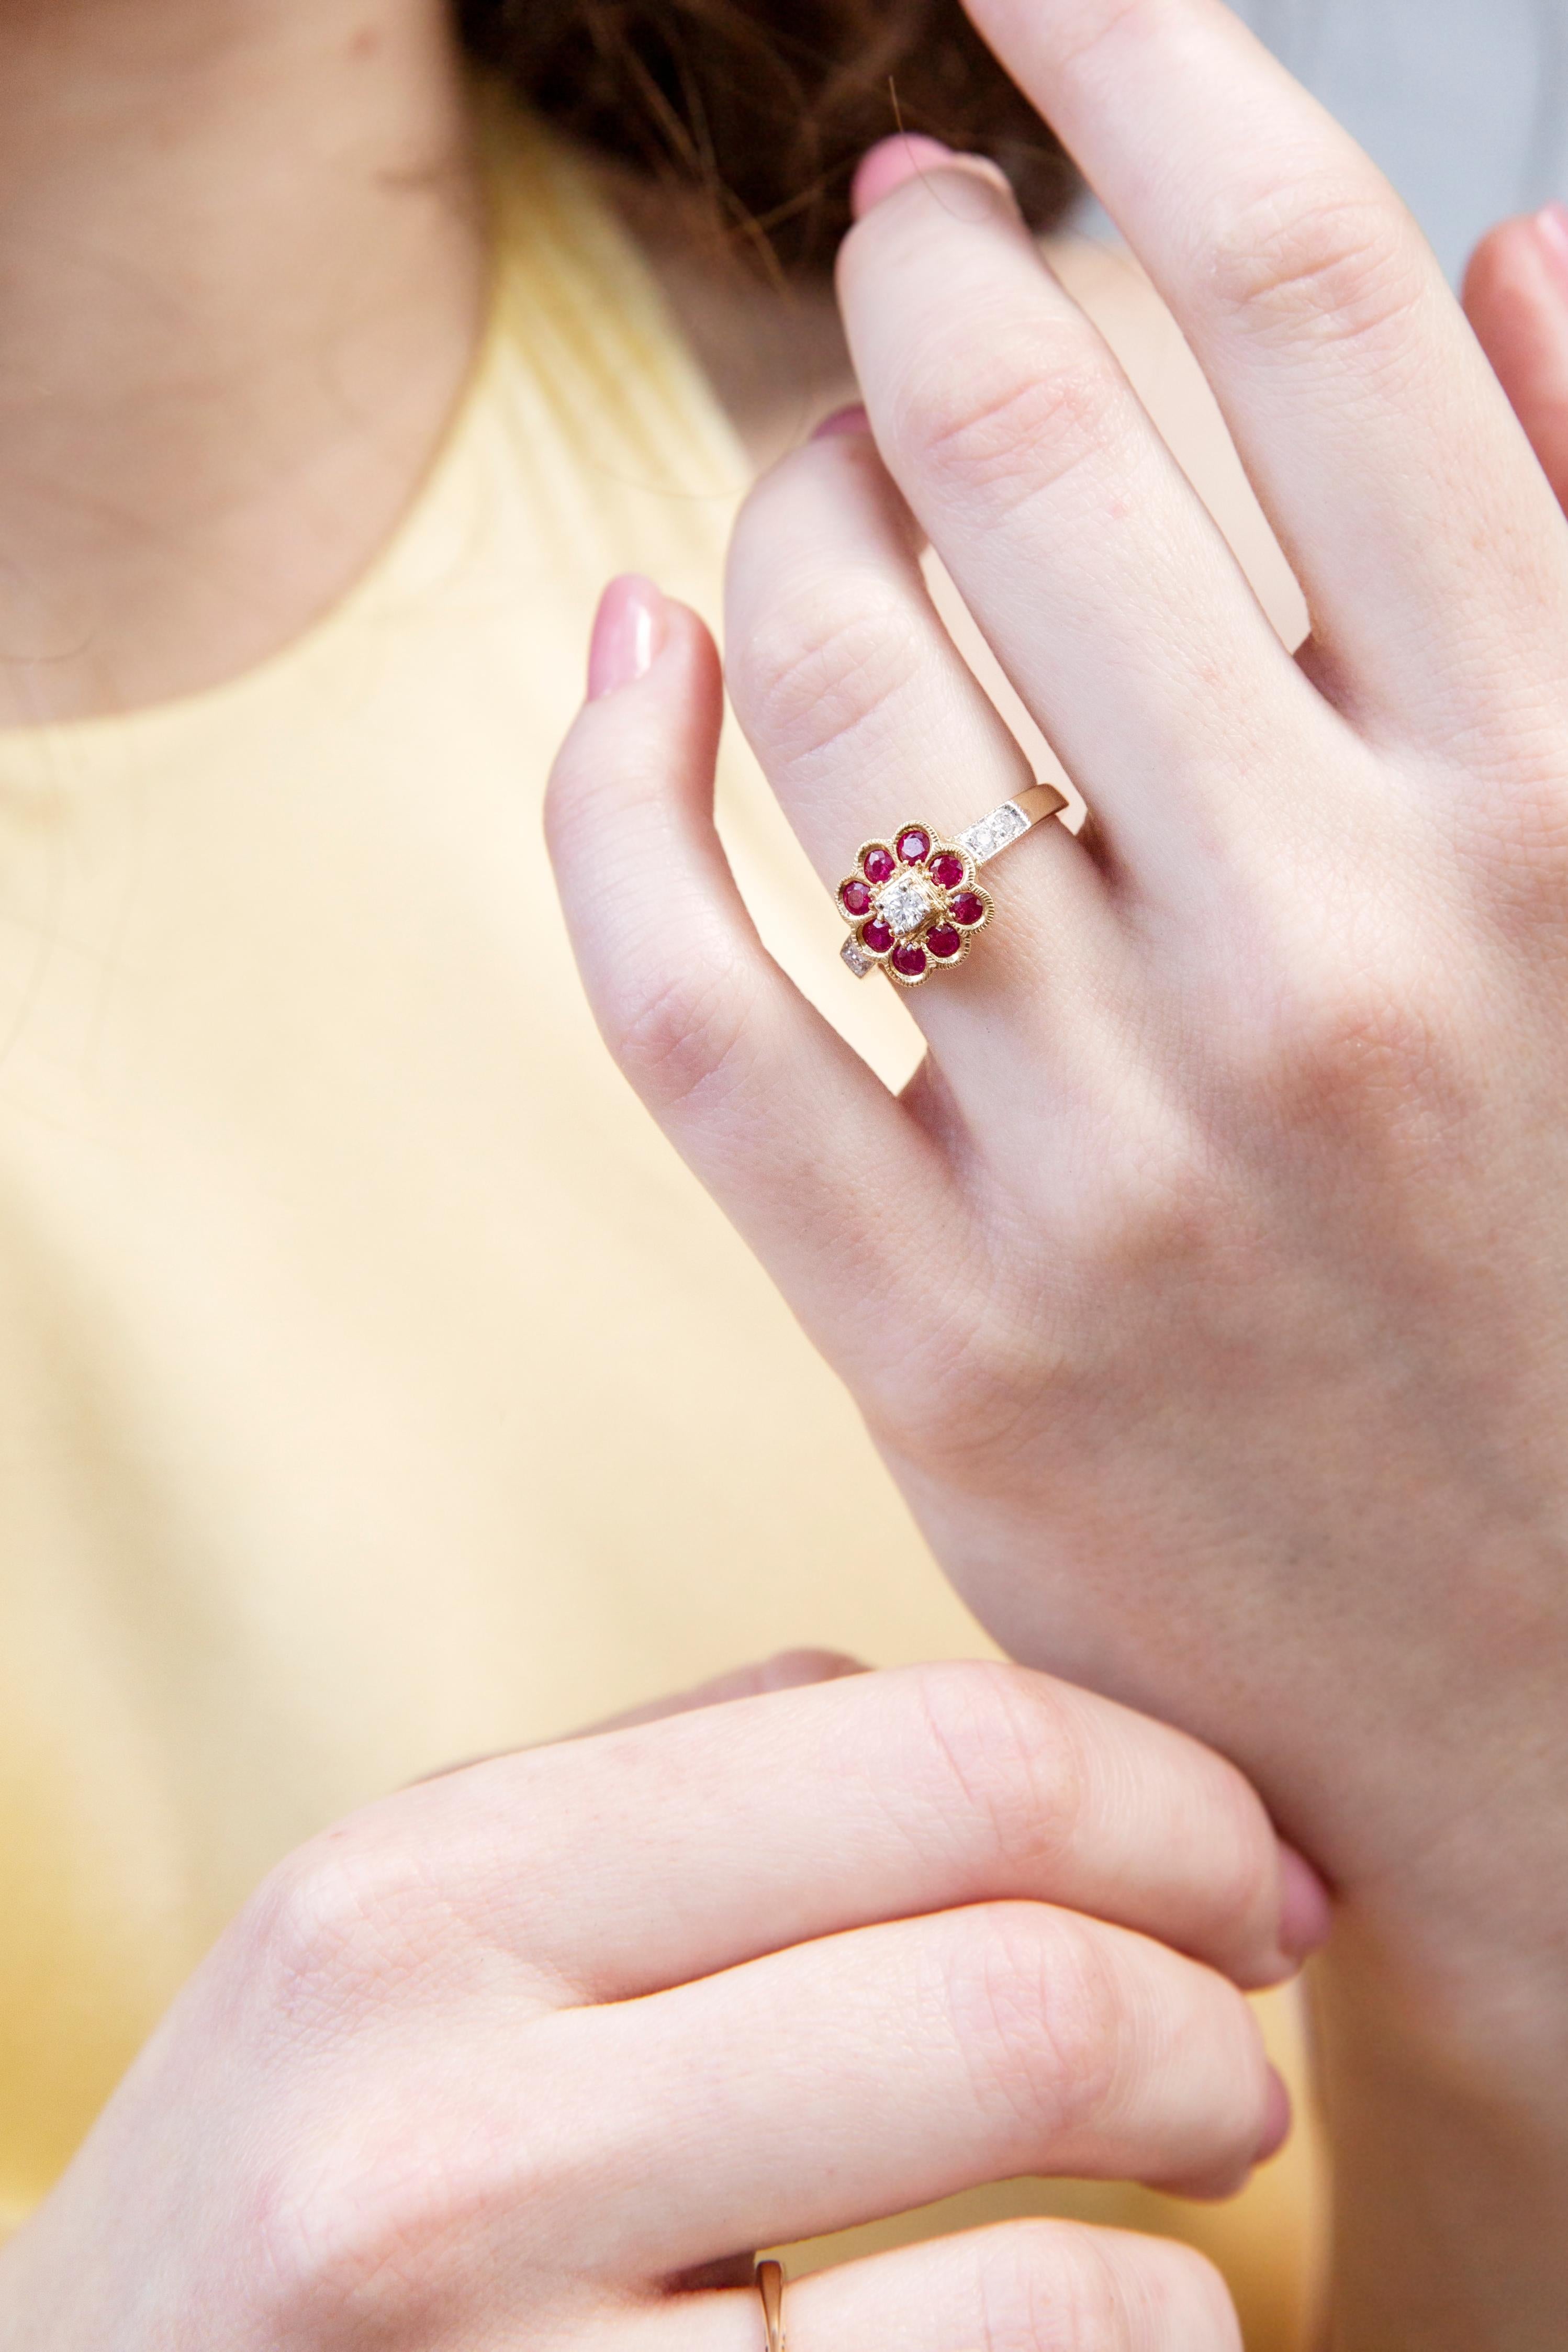 Der Helena-Ring aus 9-karätigem Gold mit seiner Blume aus rosafarbenen Rubinen und schimmernden Diamanten wäre das süßeste Geschenk für Ihre Liebe. Der Vorhang für diese Liebesgeschichte wird nicht so bald fallen.

Der Helena Ring Edelstein